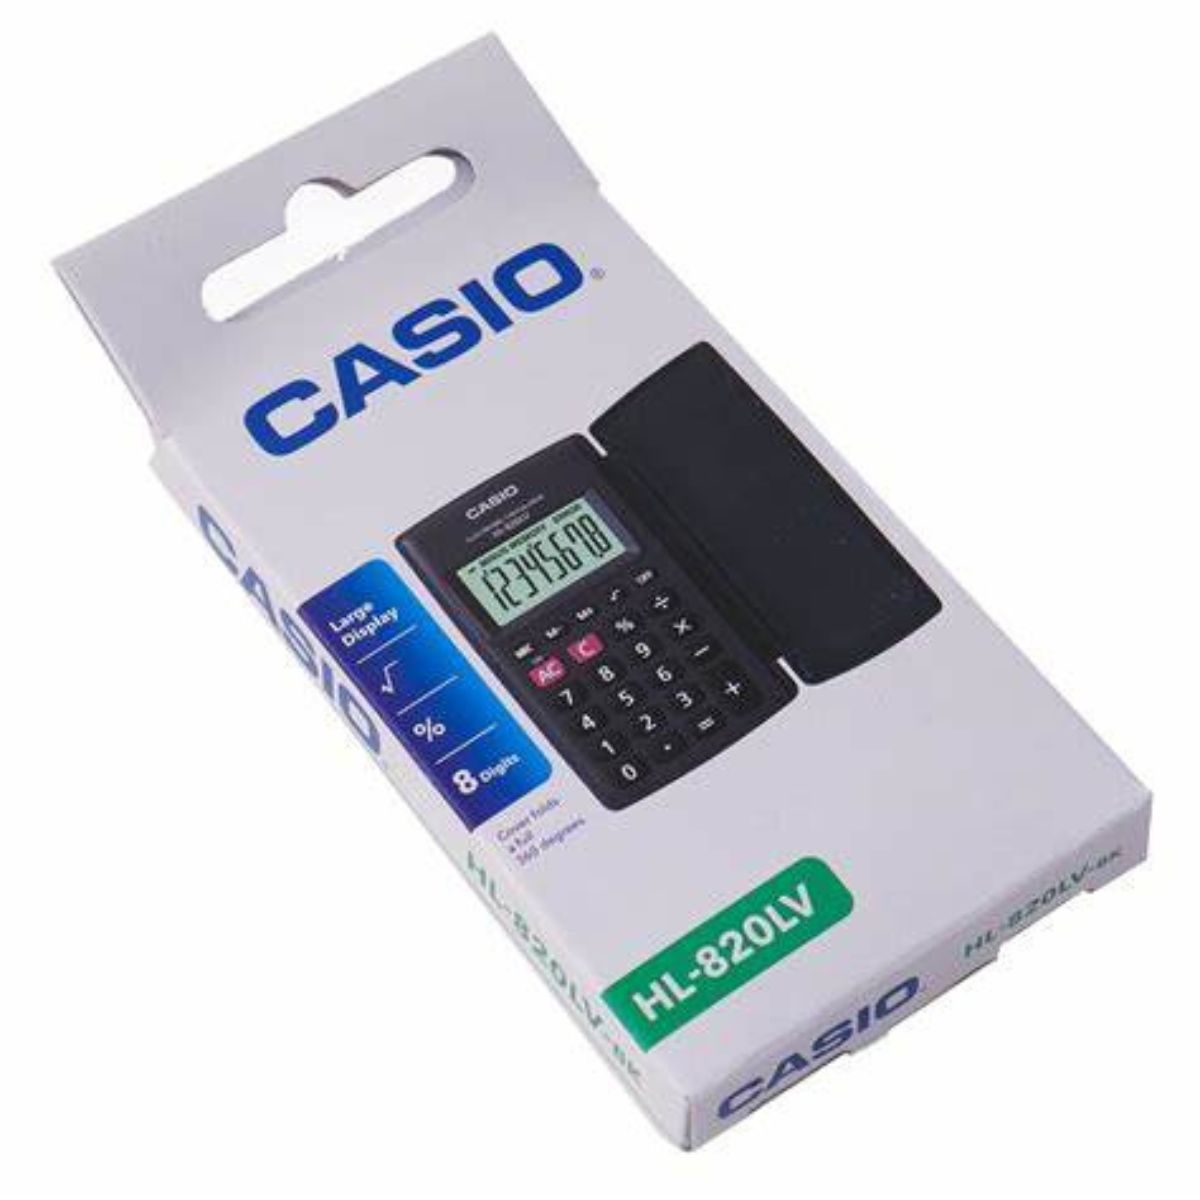 Calculadora Casio Portatil Negra 8 Dígitos 10x12 Cm Con Tapa